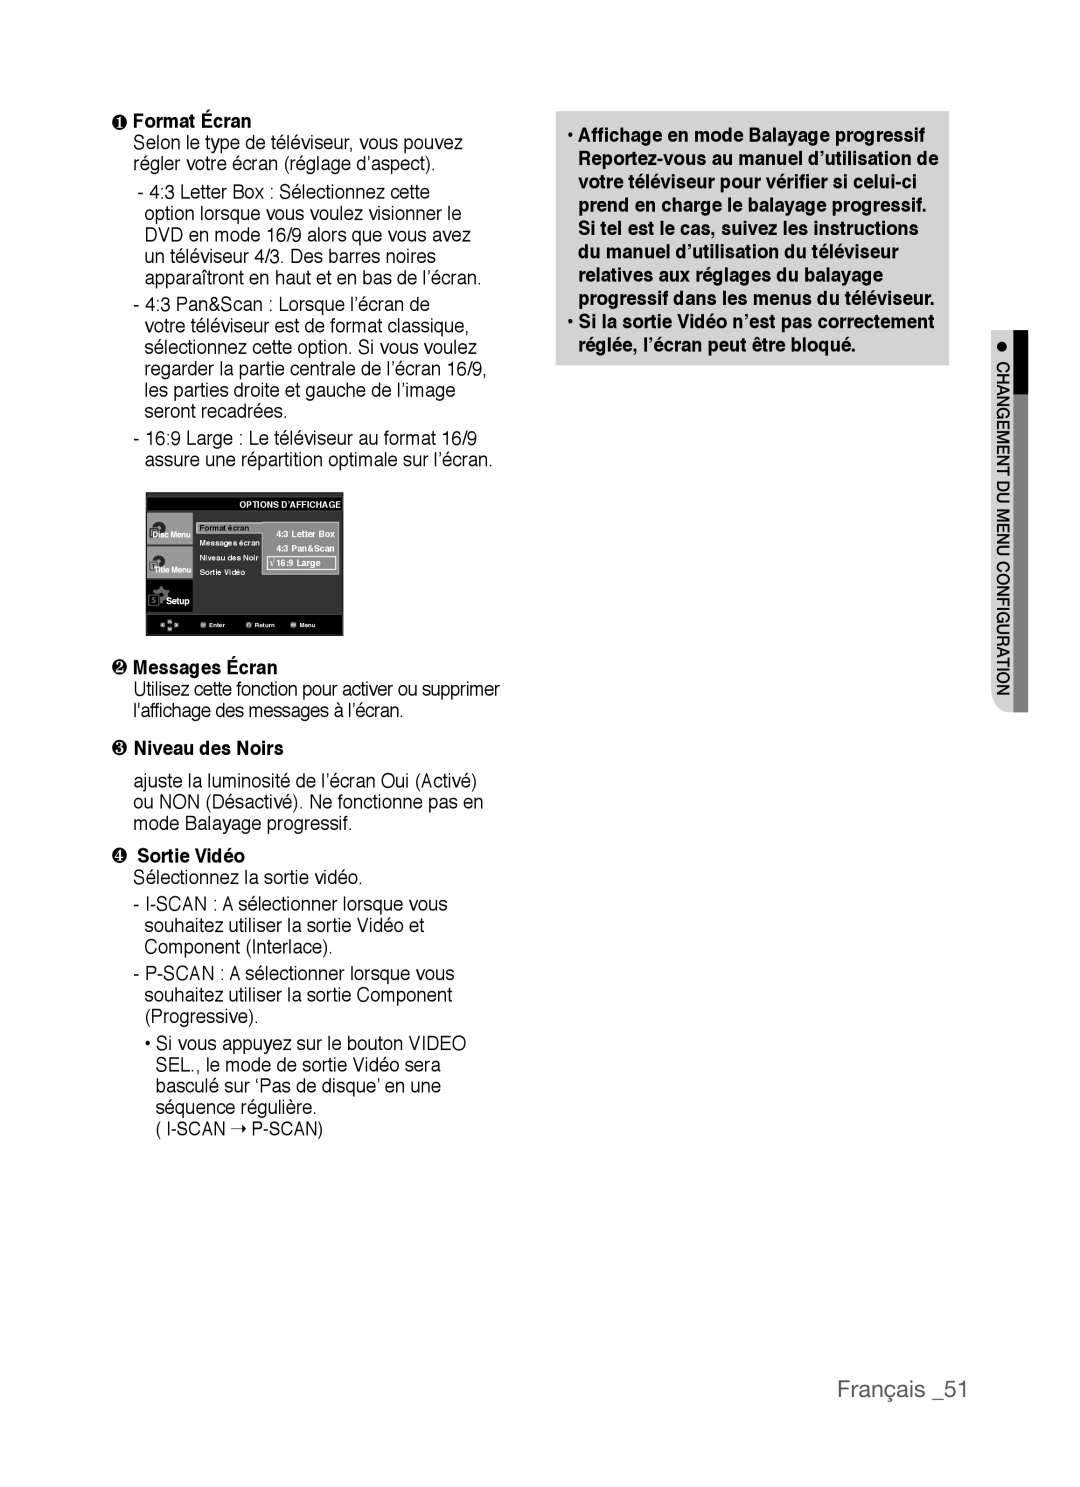 Samsung AK68-01770G ❶ Format Écran, ❷ Messages Écran, ❸ Niveau des Noirs, ❹ Sortie Vidéo, réglée, l’écran peut être bloqué 